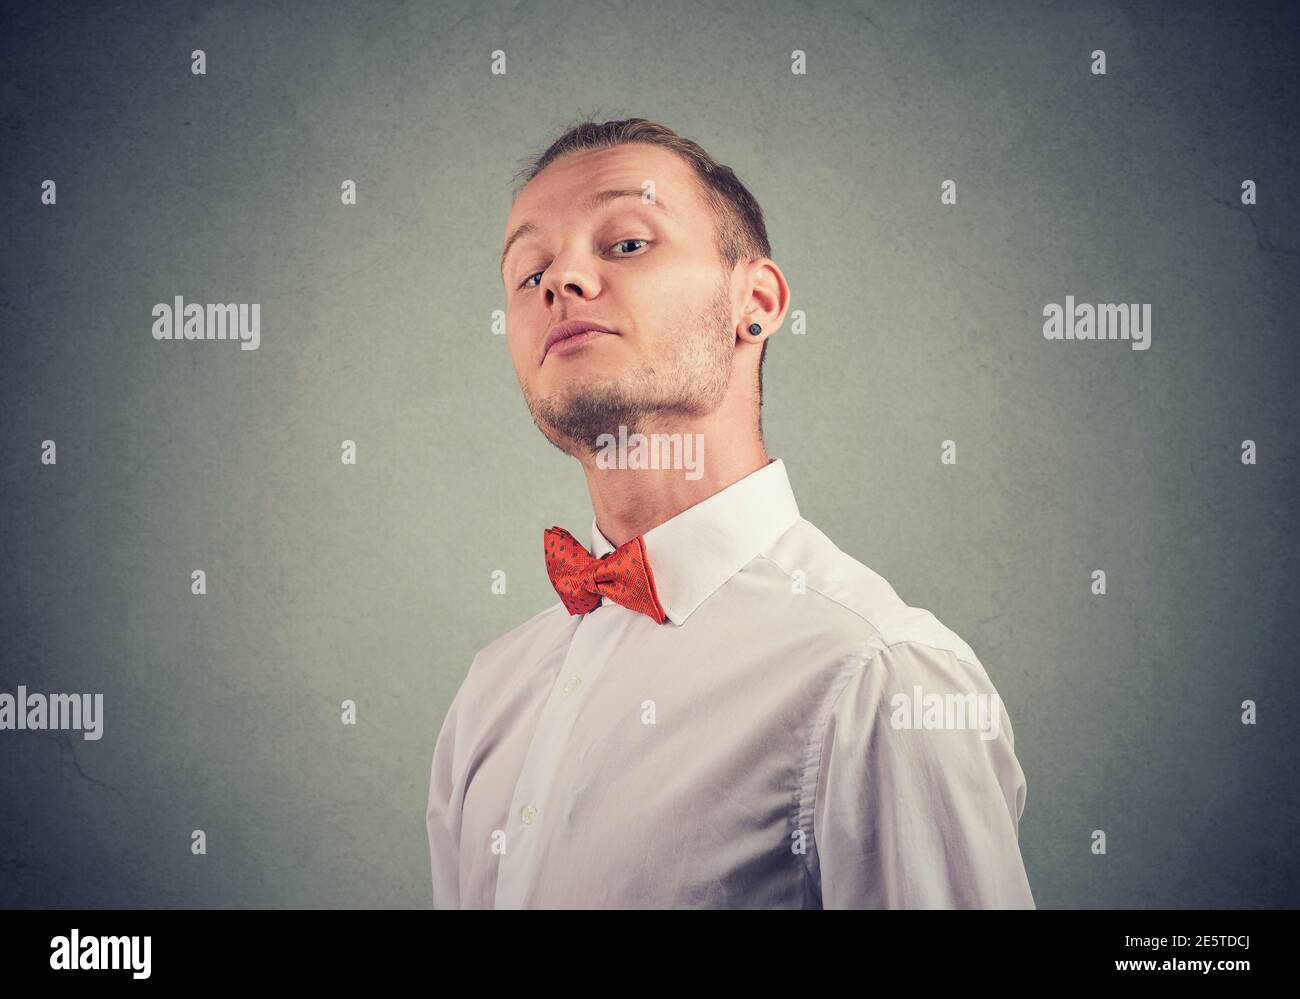 Retrato de un joven snobby mirando la cámara Foto de stock